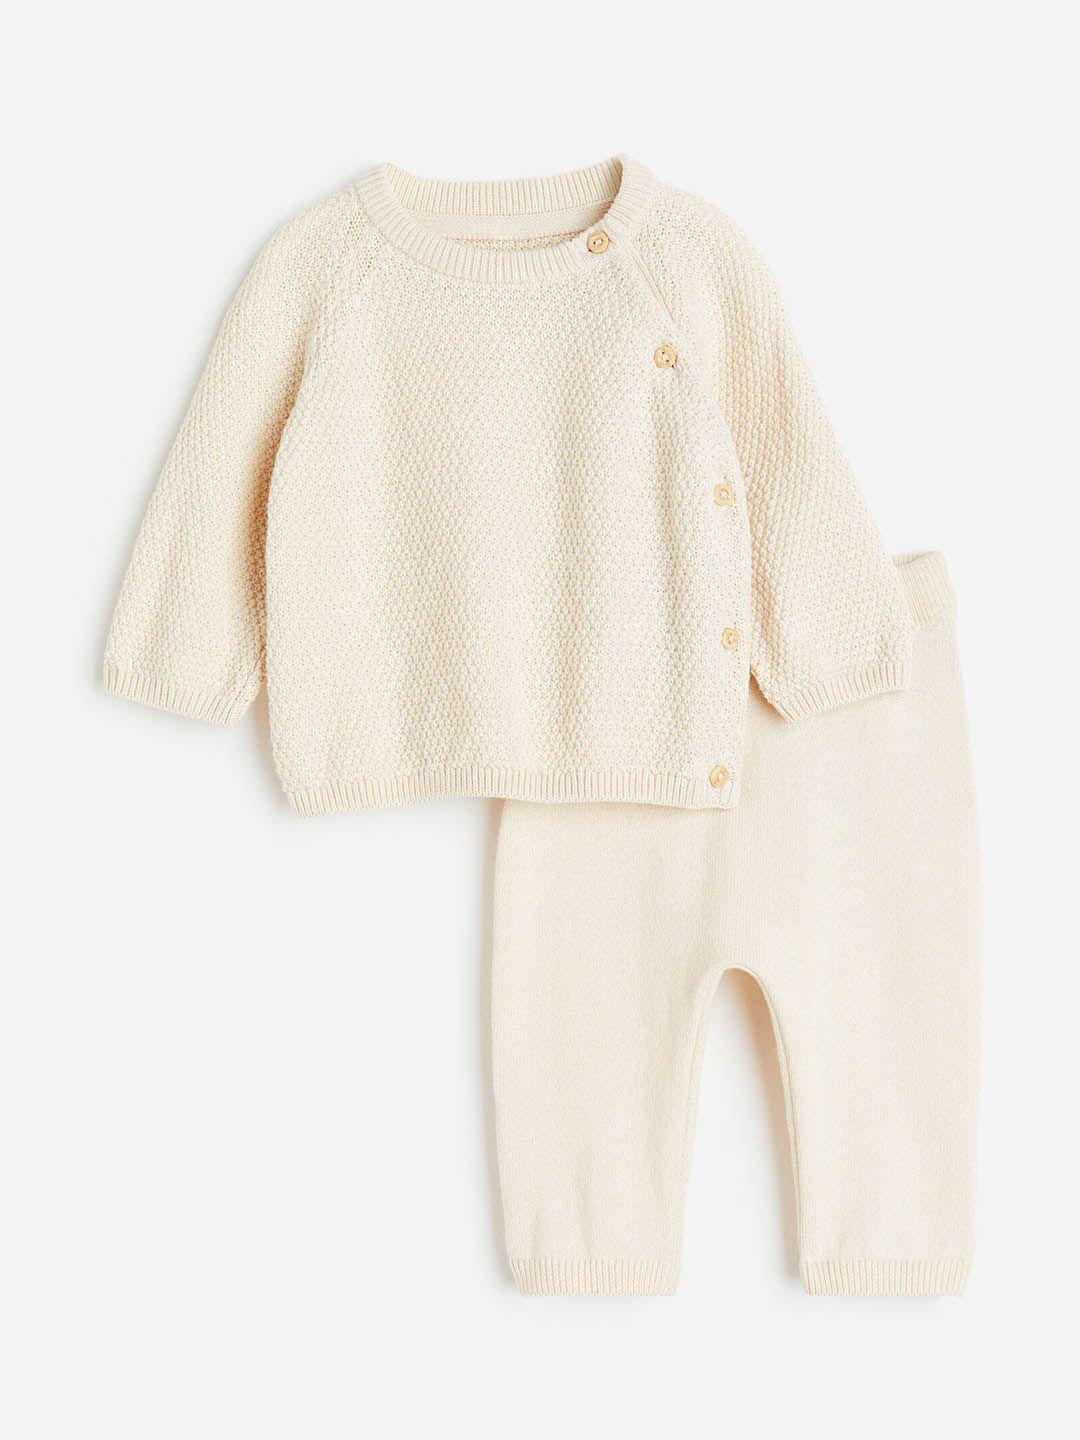 h&m infant boys 2-piece cotton set